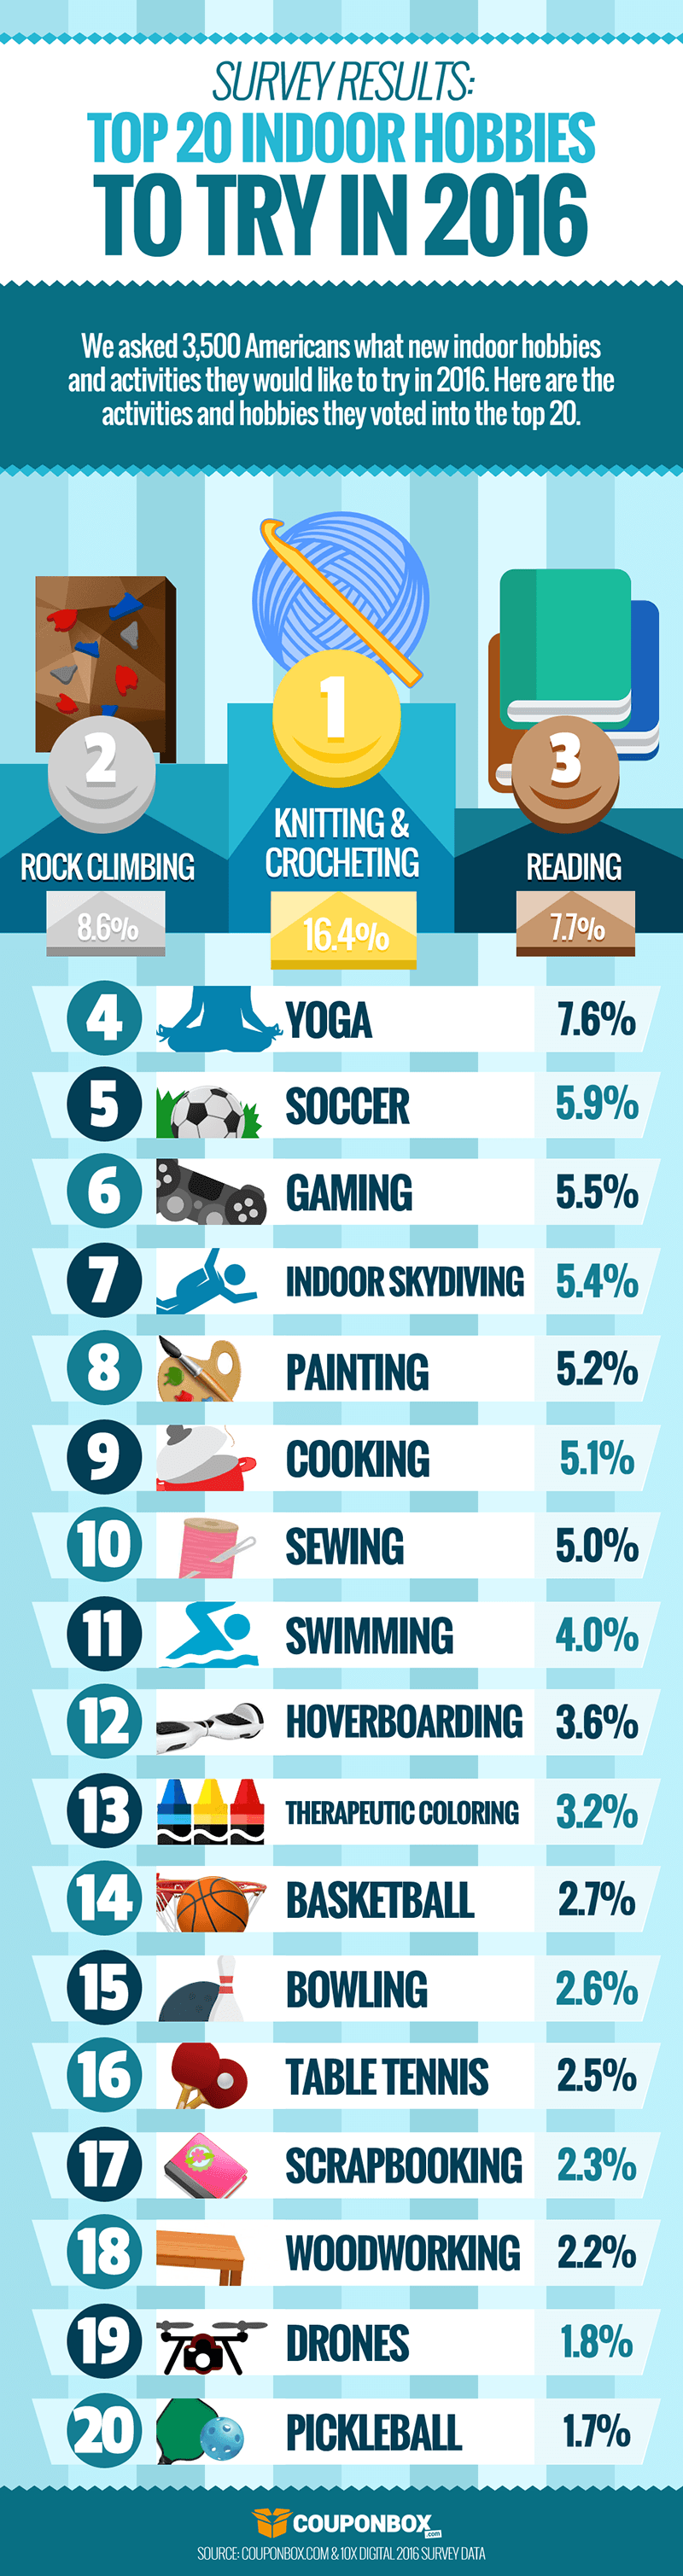 Top 20 Indoor Hobbies to Try in 2016